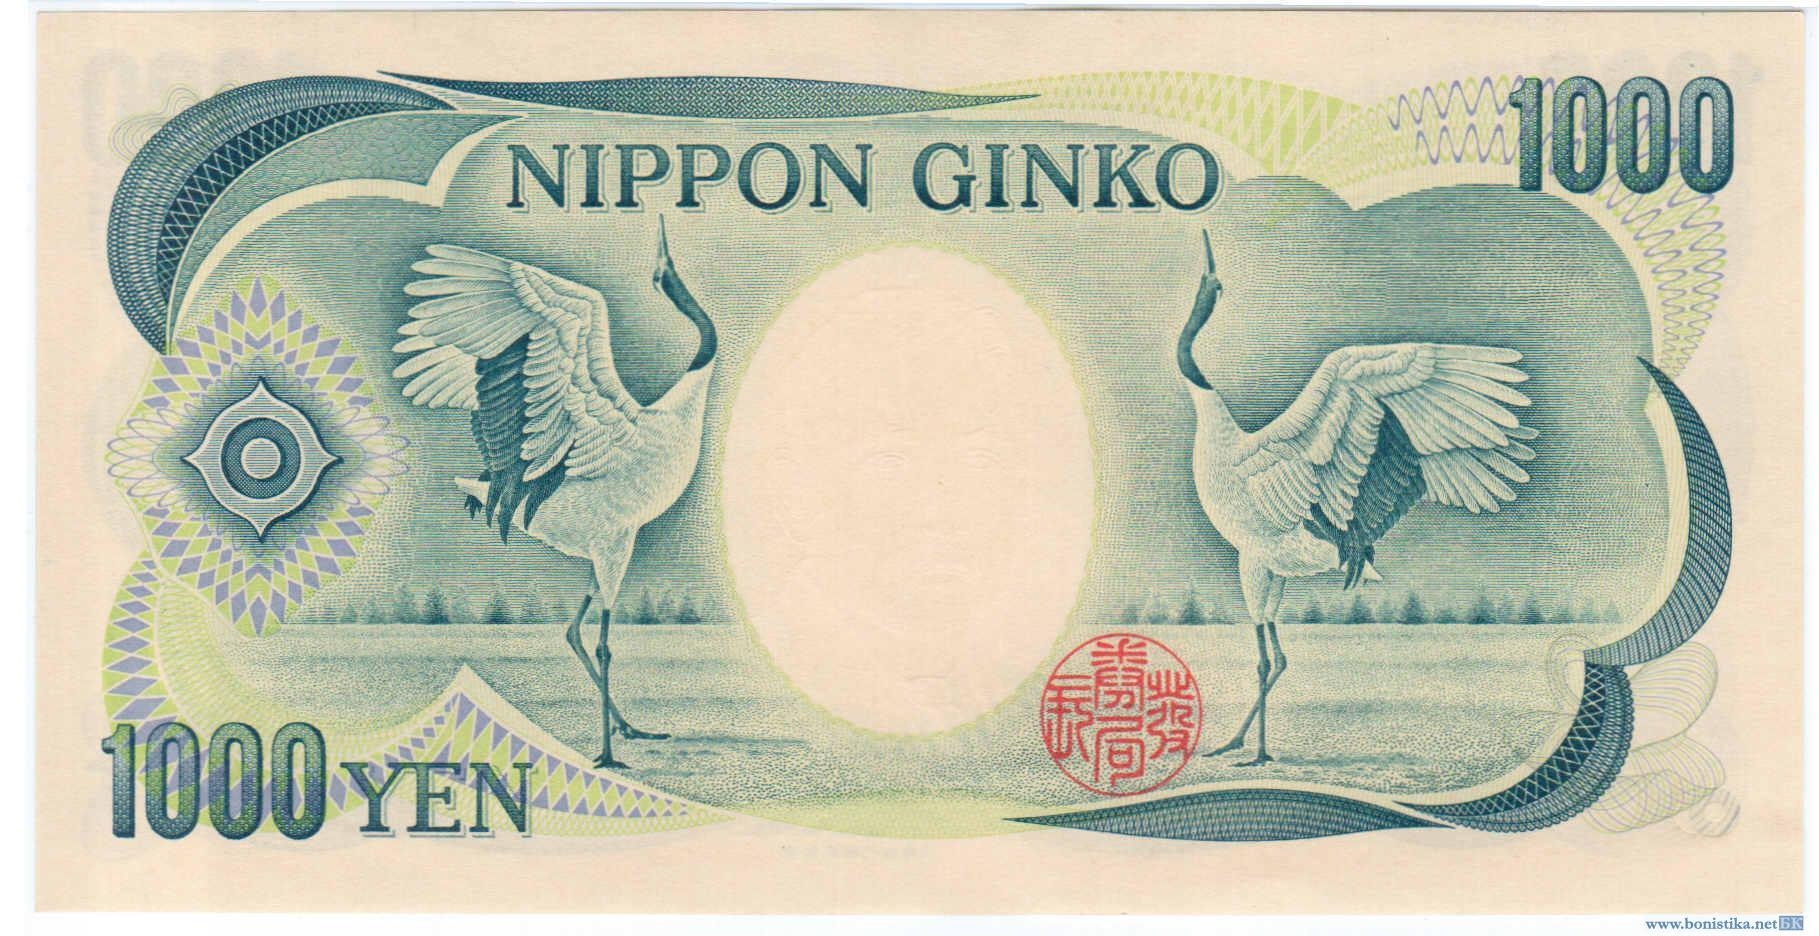 Банкнота центрального Банка Японии номиналом 1000 йен (yen) оборотная сторона